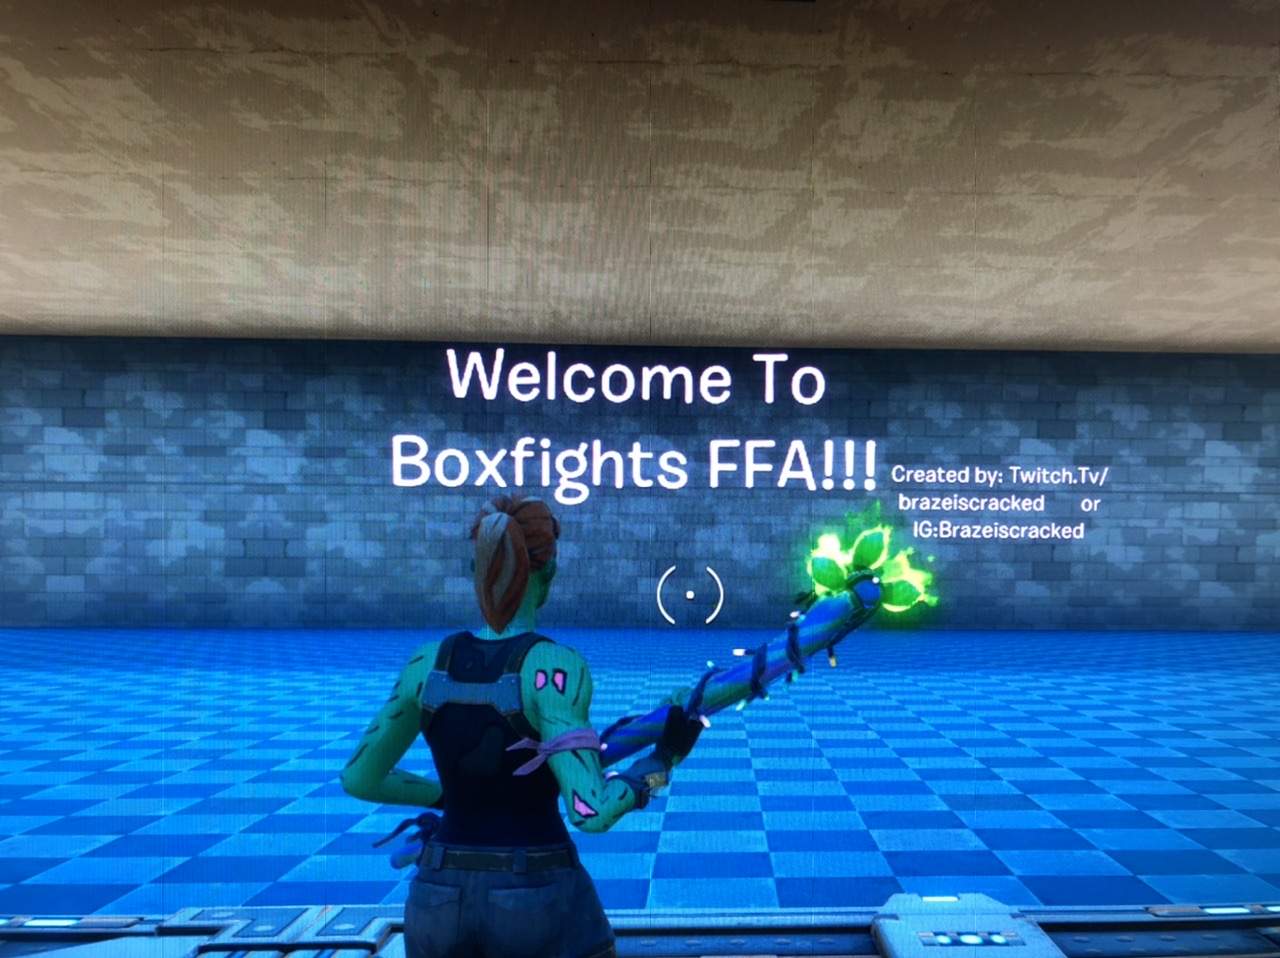 BOX FIGHTS FFA